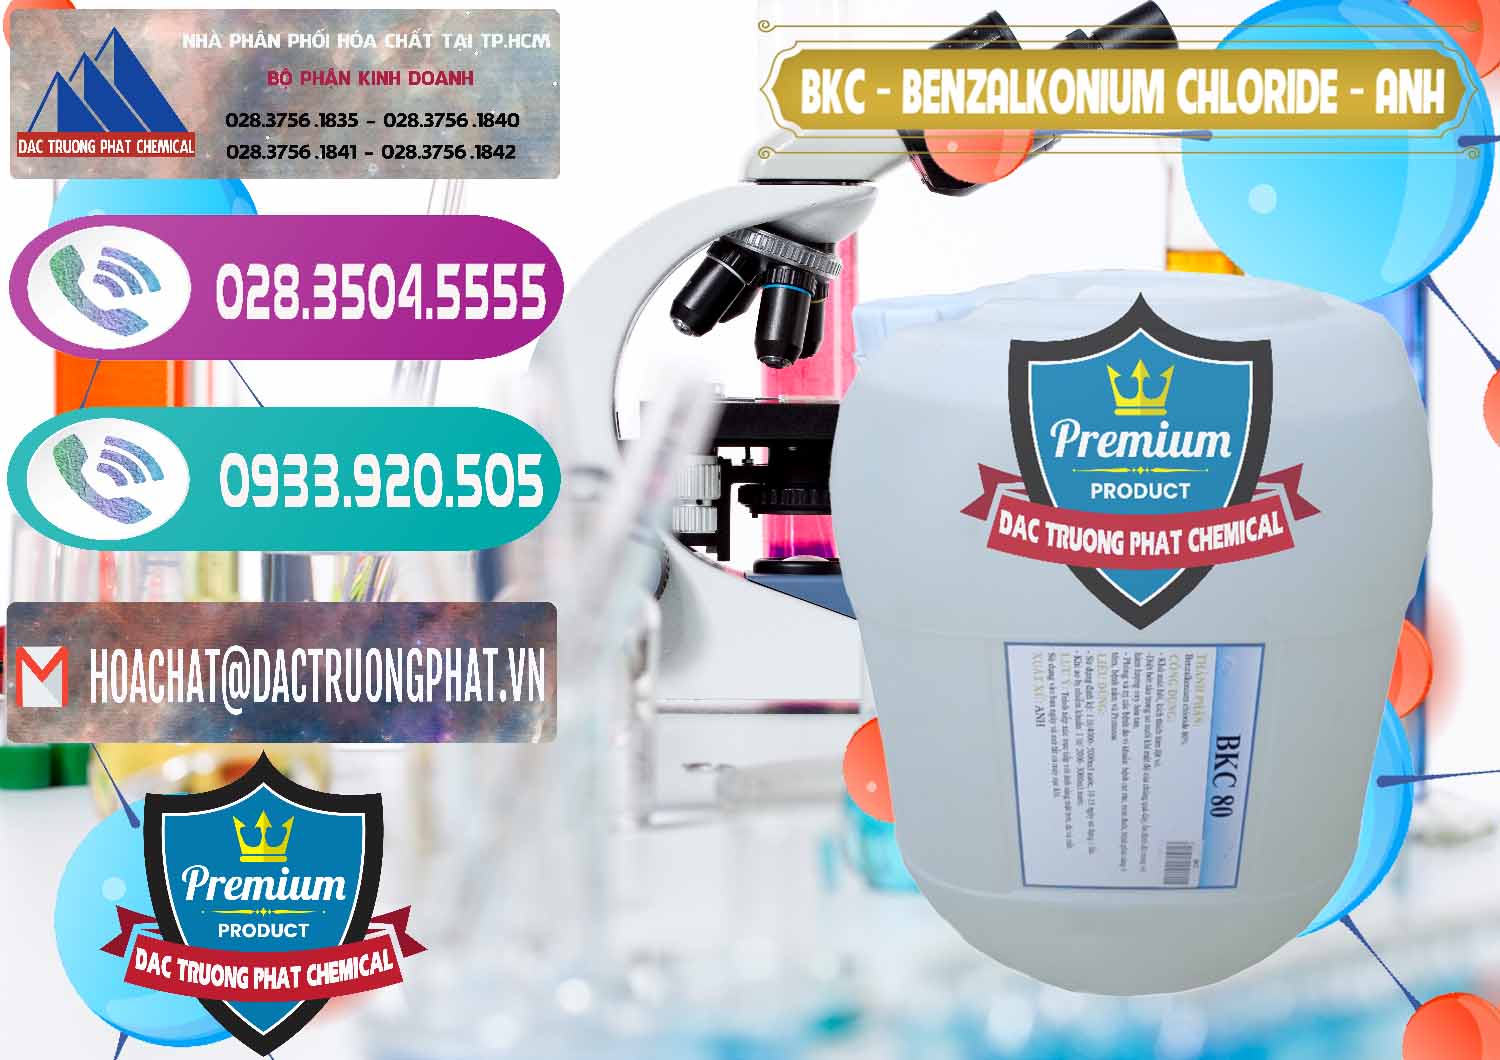 Nhà cung cấp - bán BKC - Benzalkonium Chloride Anh Quốc Uk Kingdoms - 0415 - Cty chuyên kinh doanh - cung cấp hóa chất tại TP.HCM - hoachatxulynuoc.com